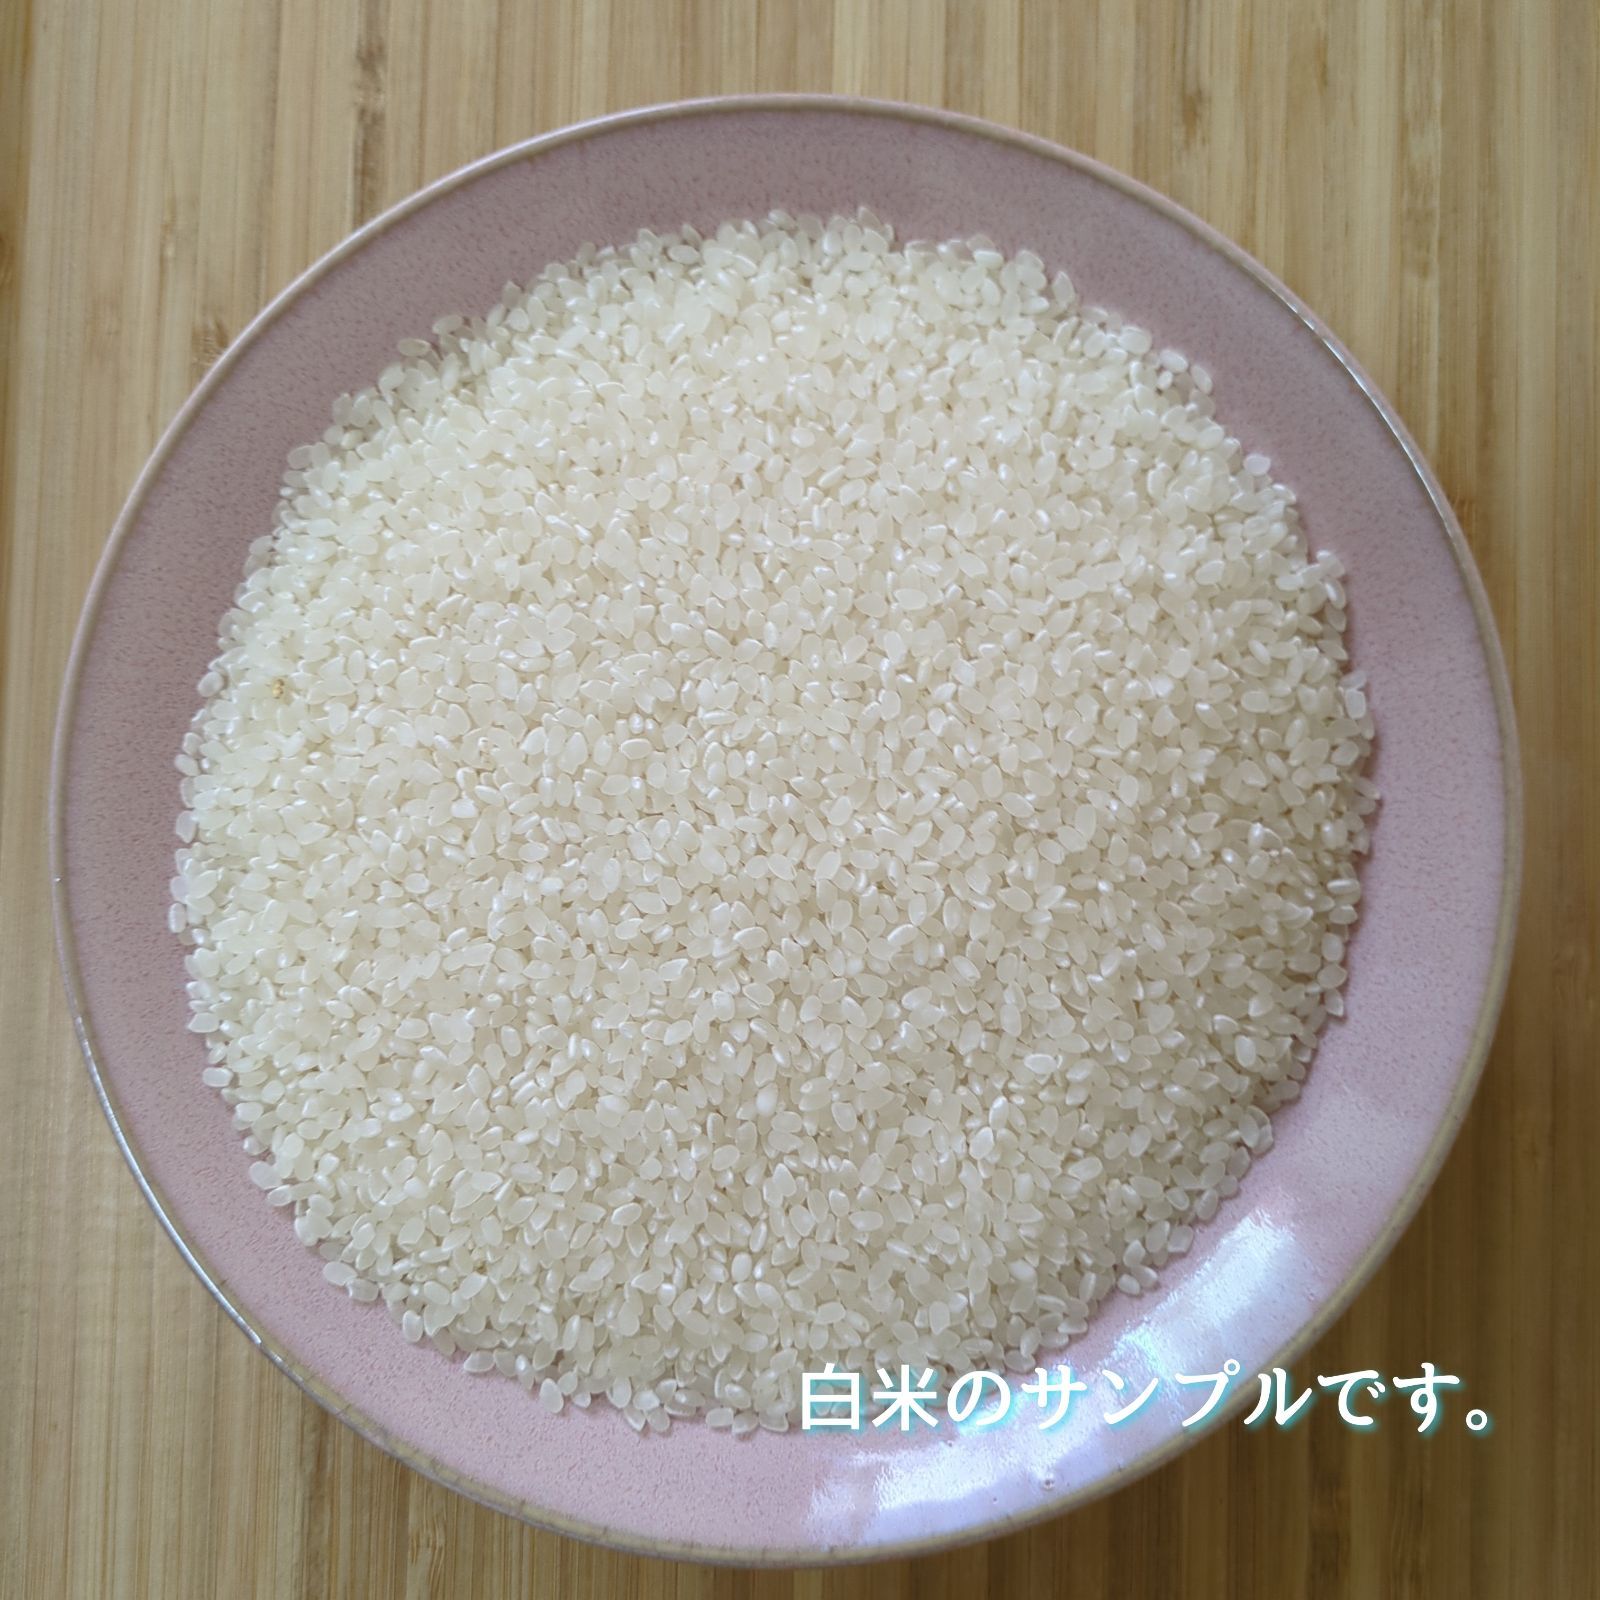 お米はご注文後に精米を致します令和5年産三重県伊賀市産コシヒカリ20㎏10㎏×2無洗米( 送料精米料消費税込)